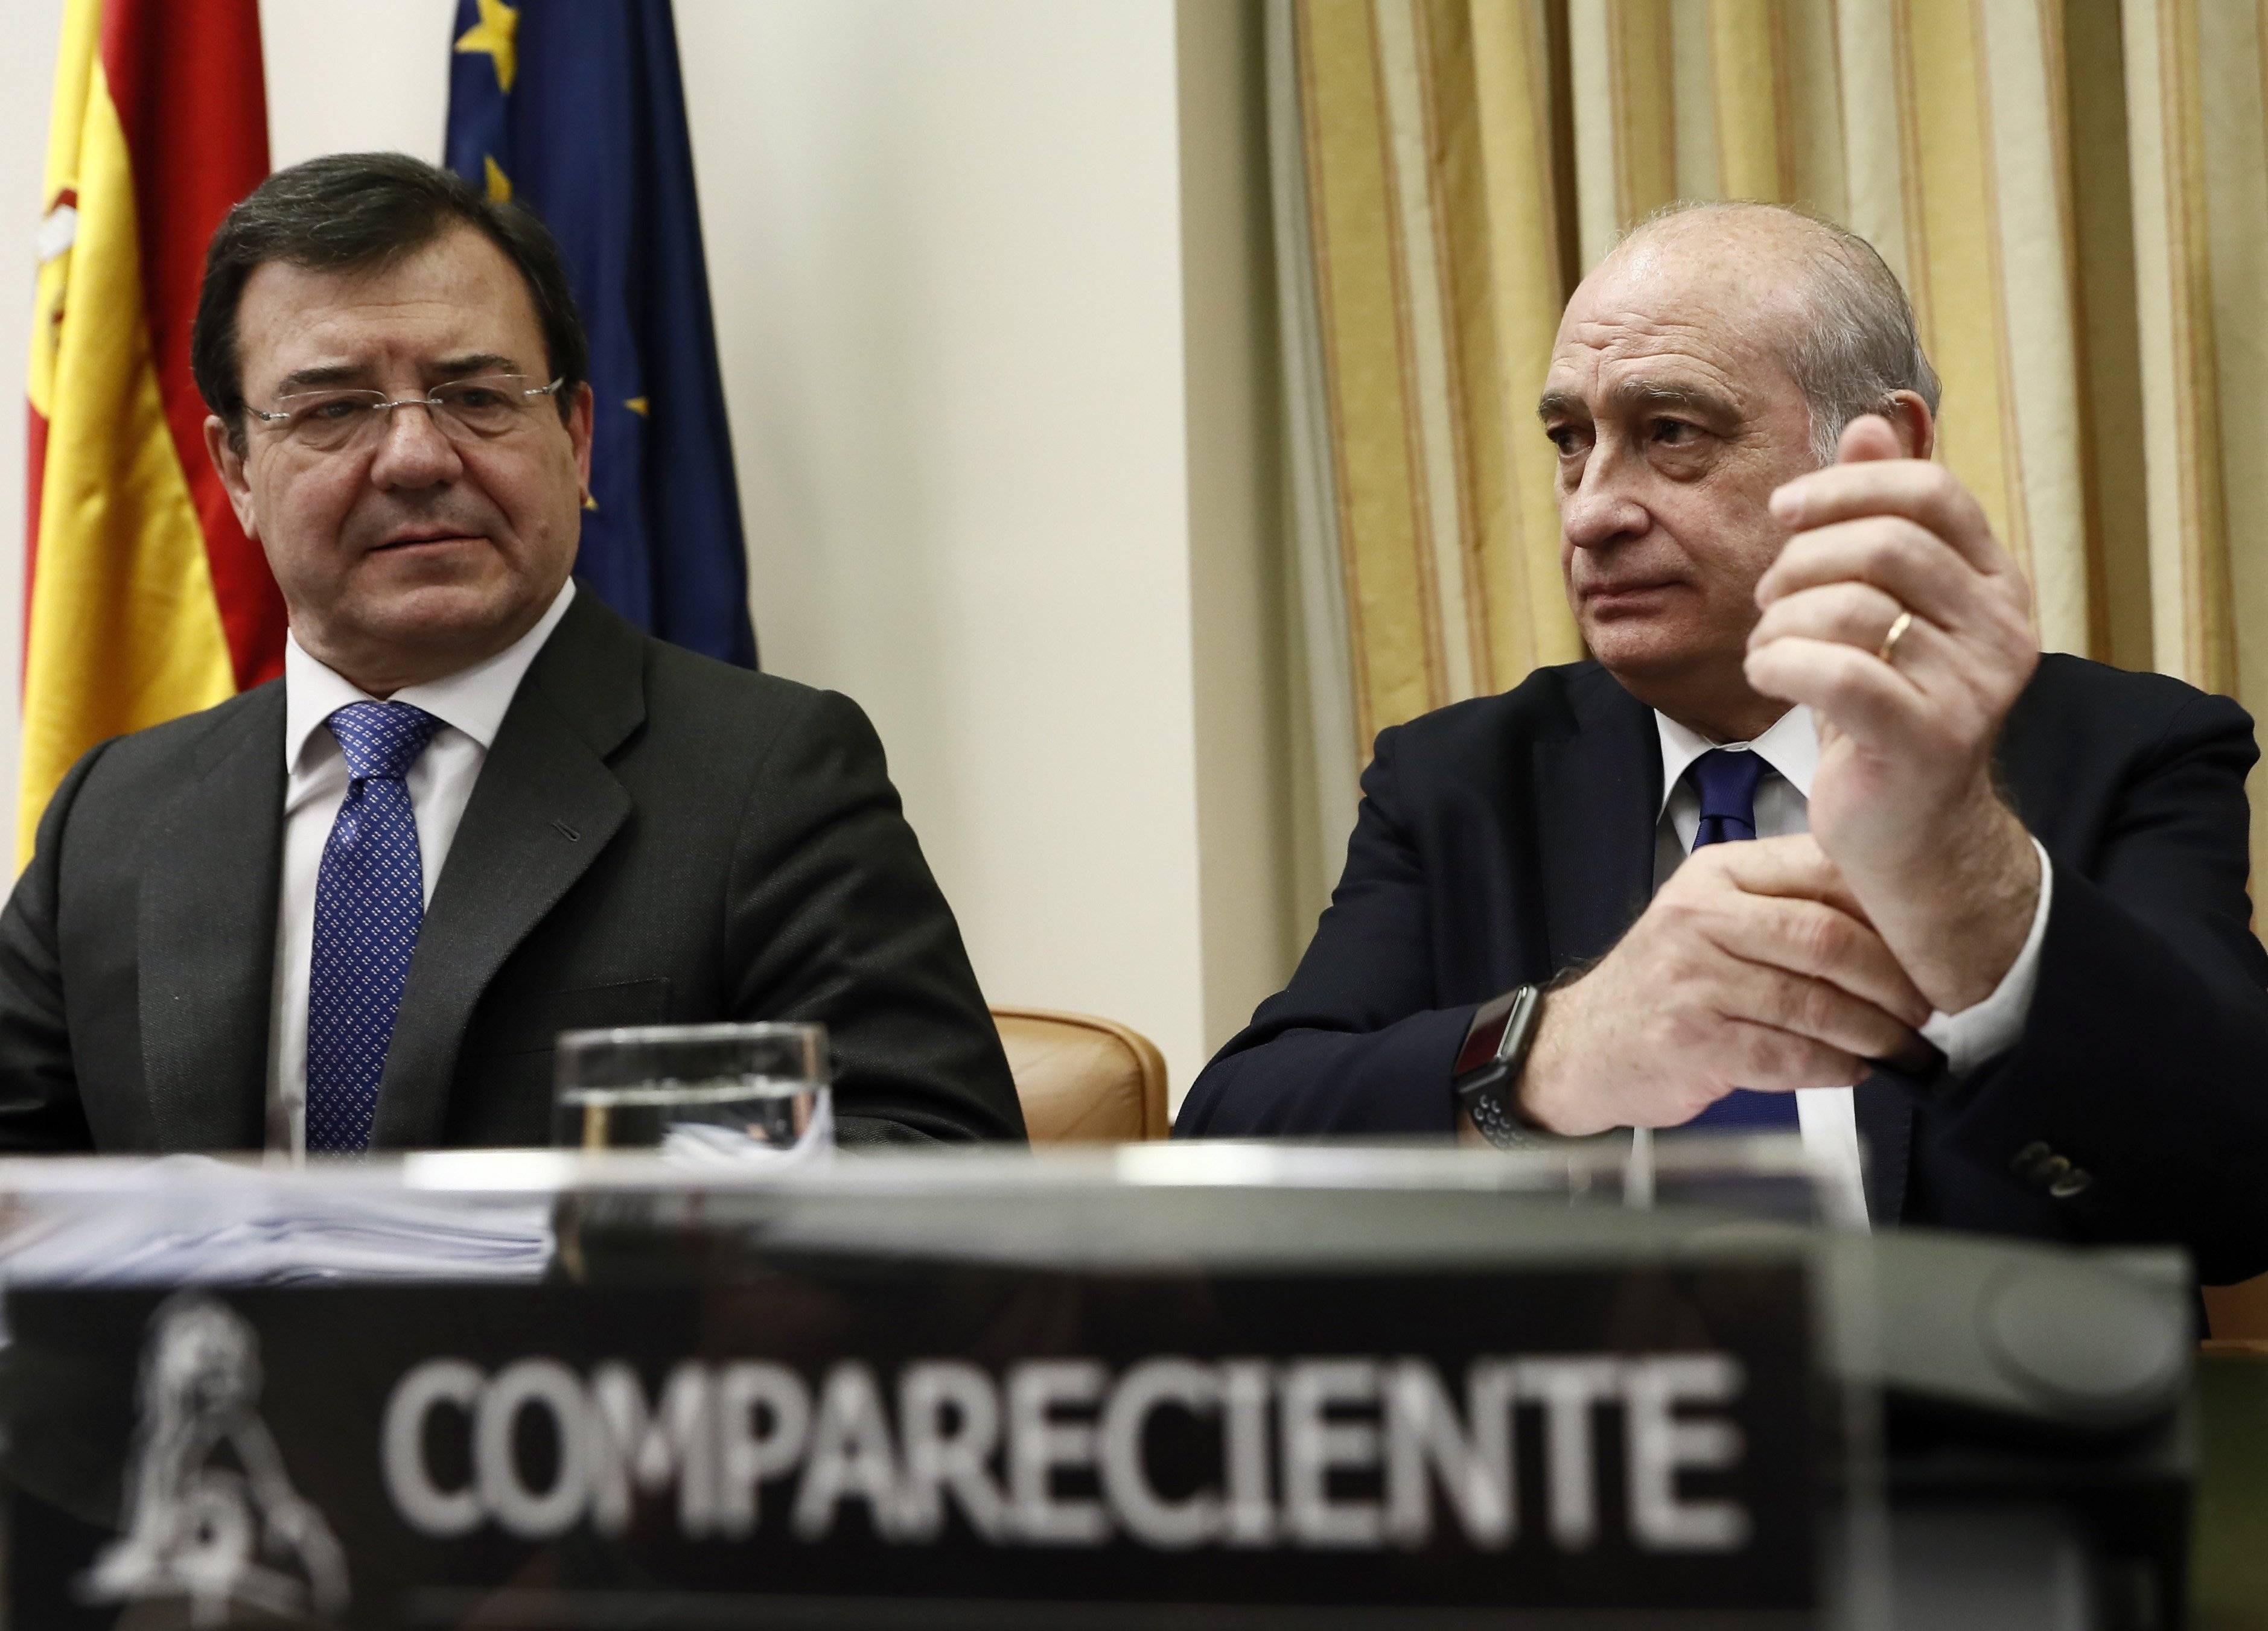 La comissió de l'Operació Catalunya al Congrés segueix bloquejada